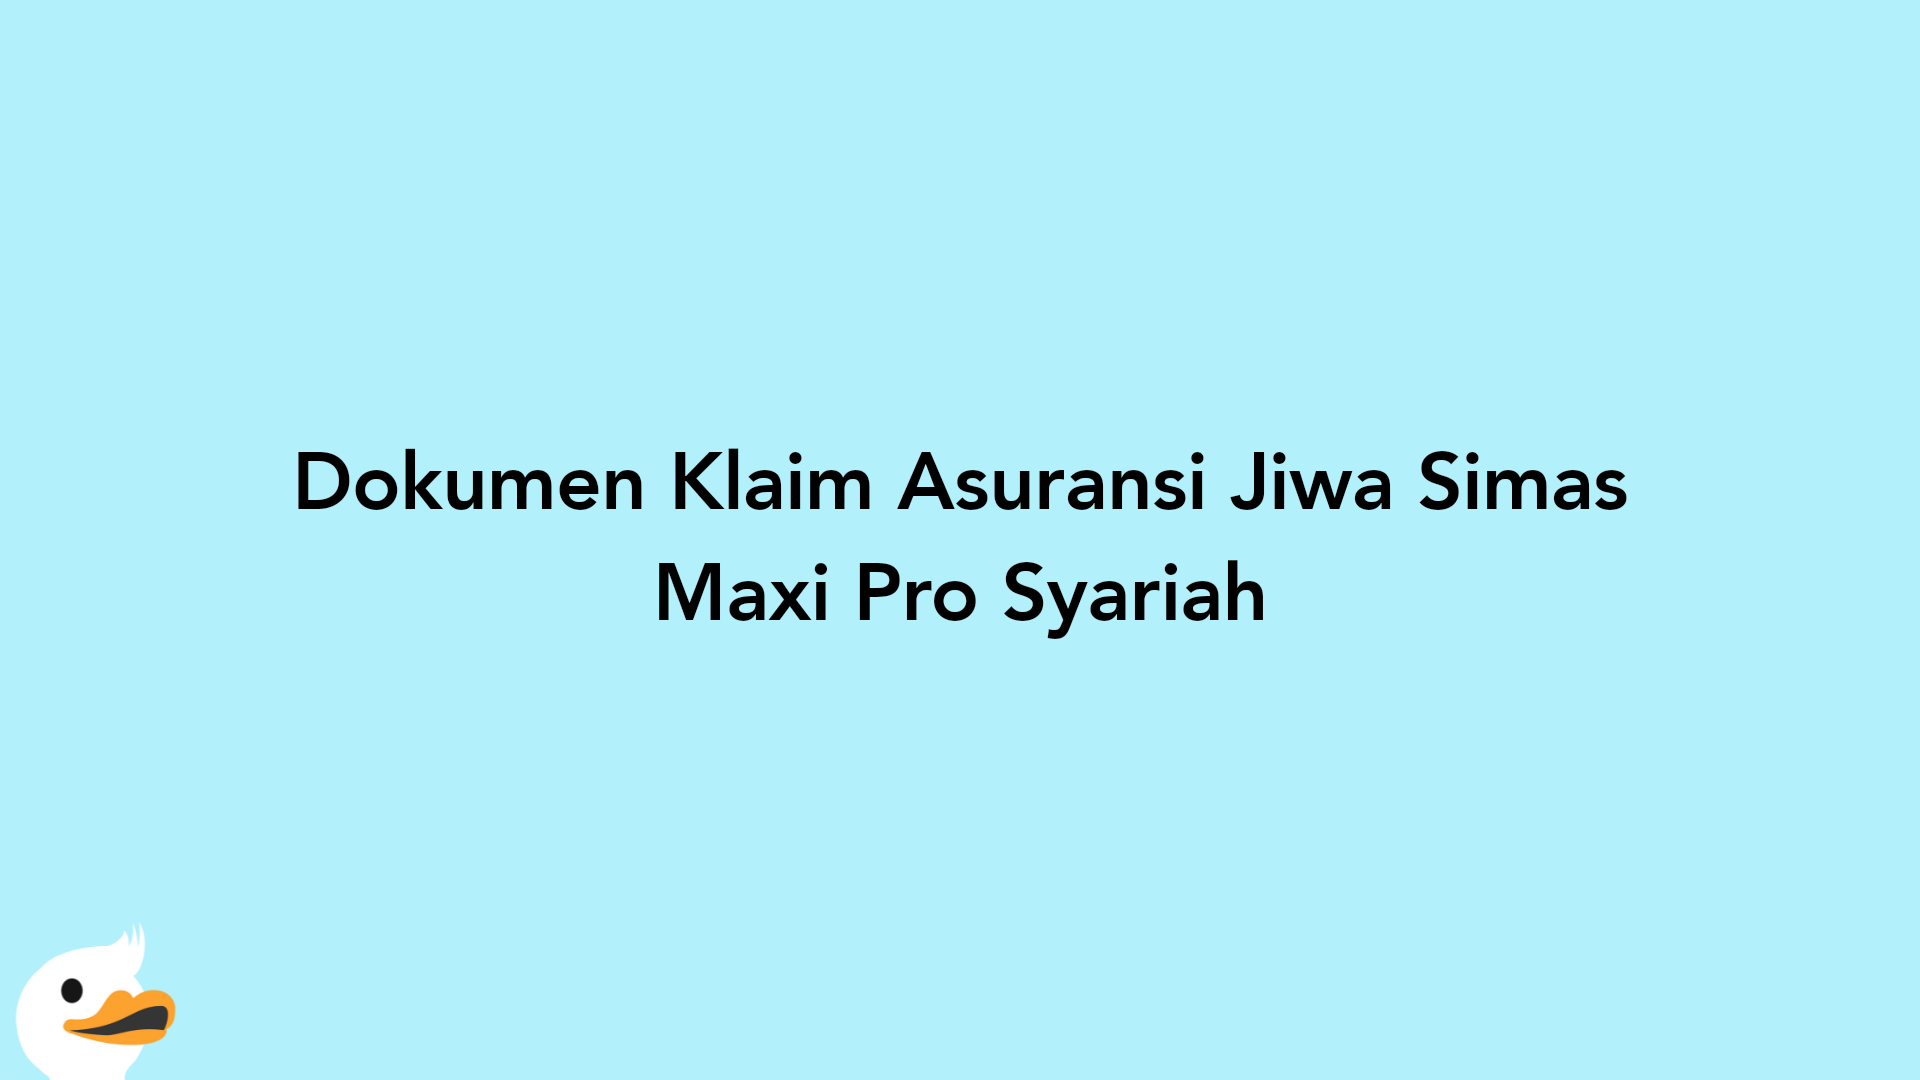 Dokumen Klaim Asuransi Jiwa Simas Maxi Pro Syariah